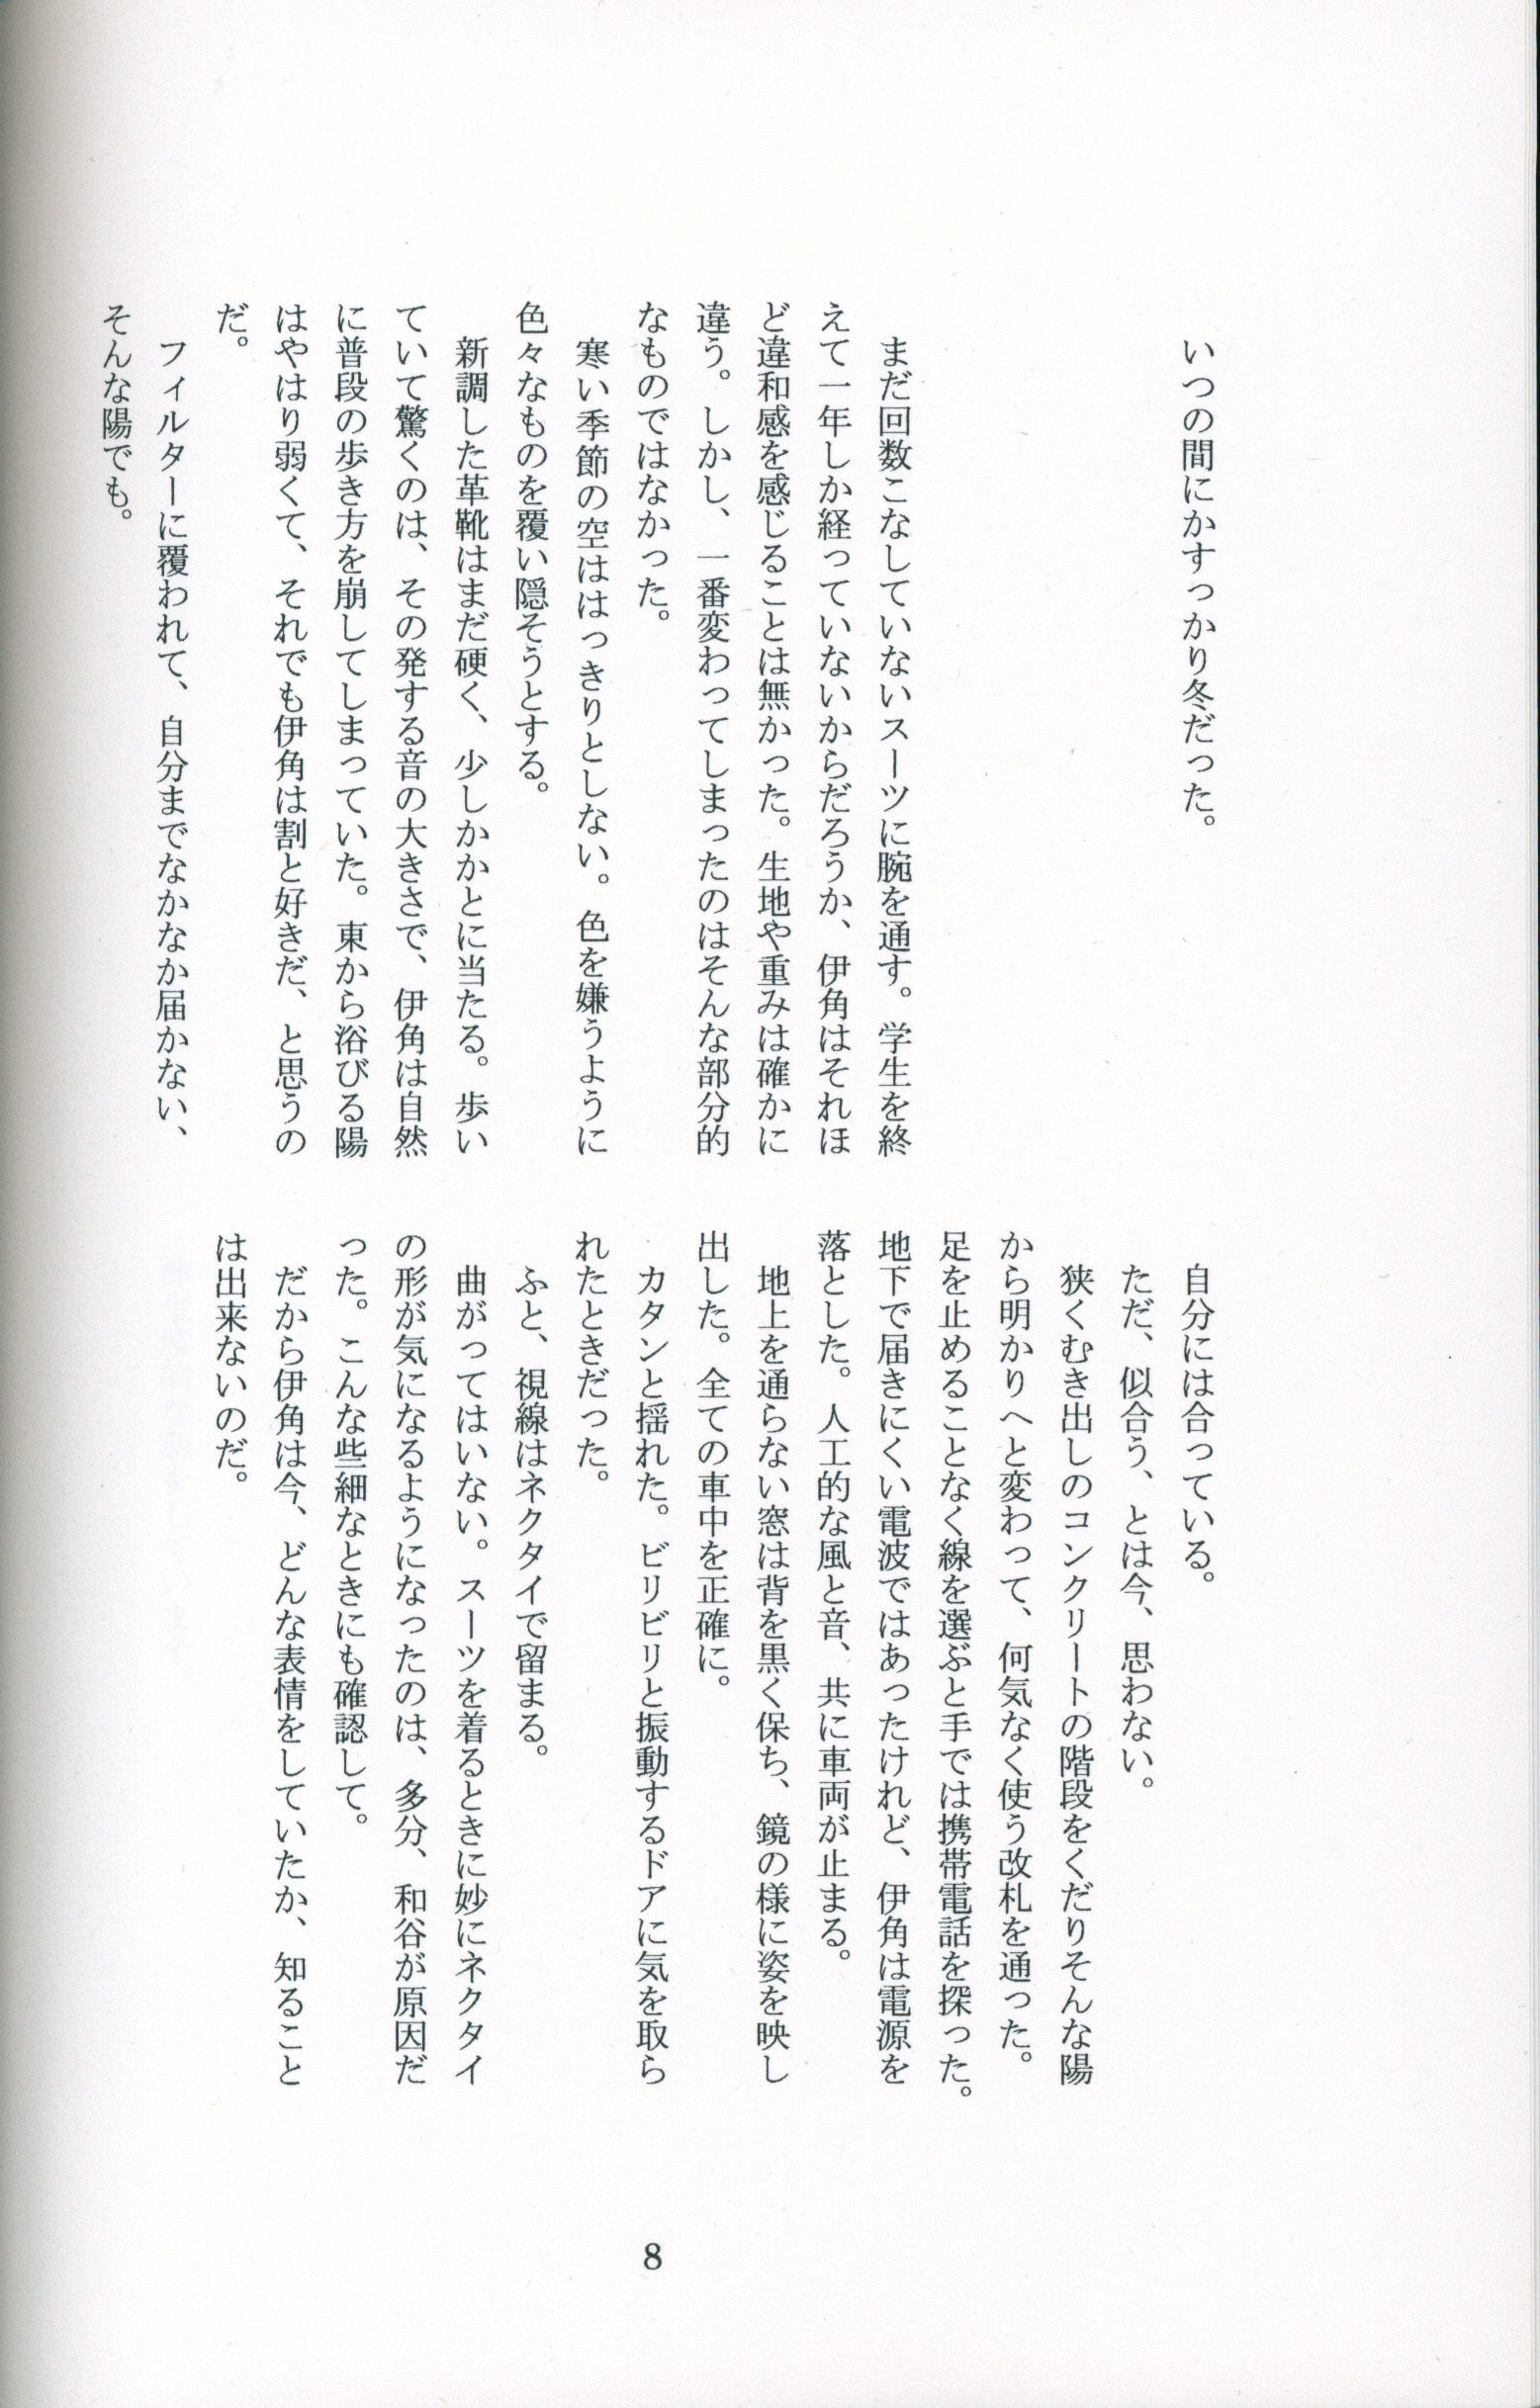 Doujinshi - Hikaru no Go / Touya Akira & Shindou Hikaru & Waya Yoshitaka & Isumi Shin'ichirō (恋) / リリカル★サイクル